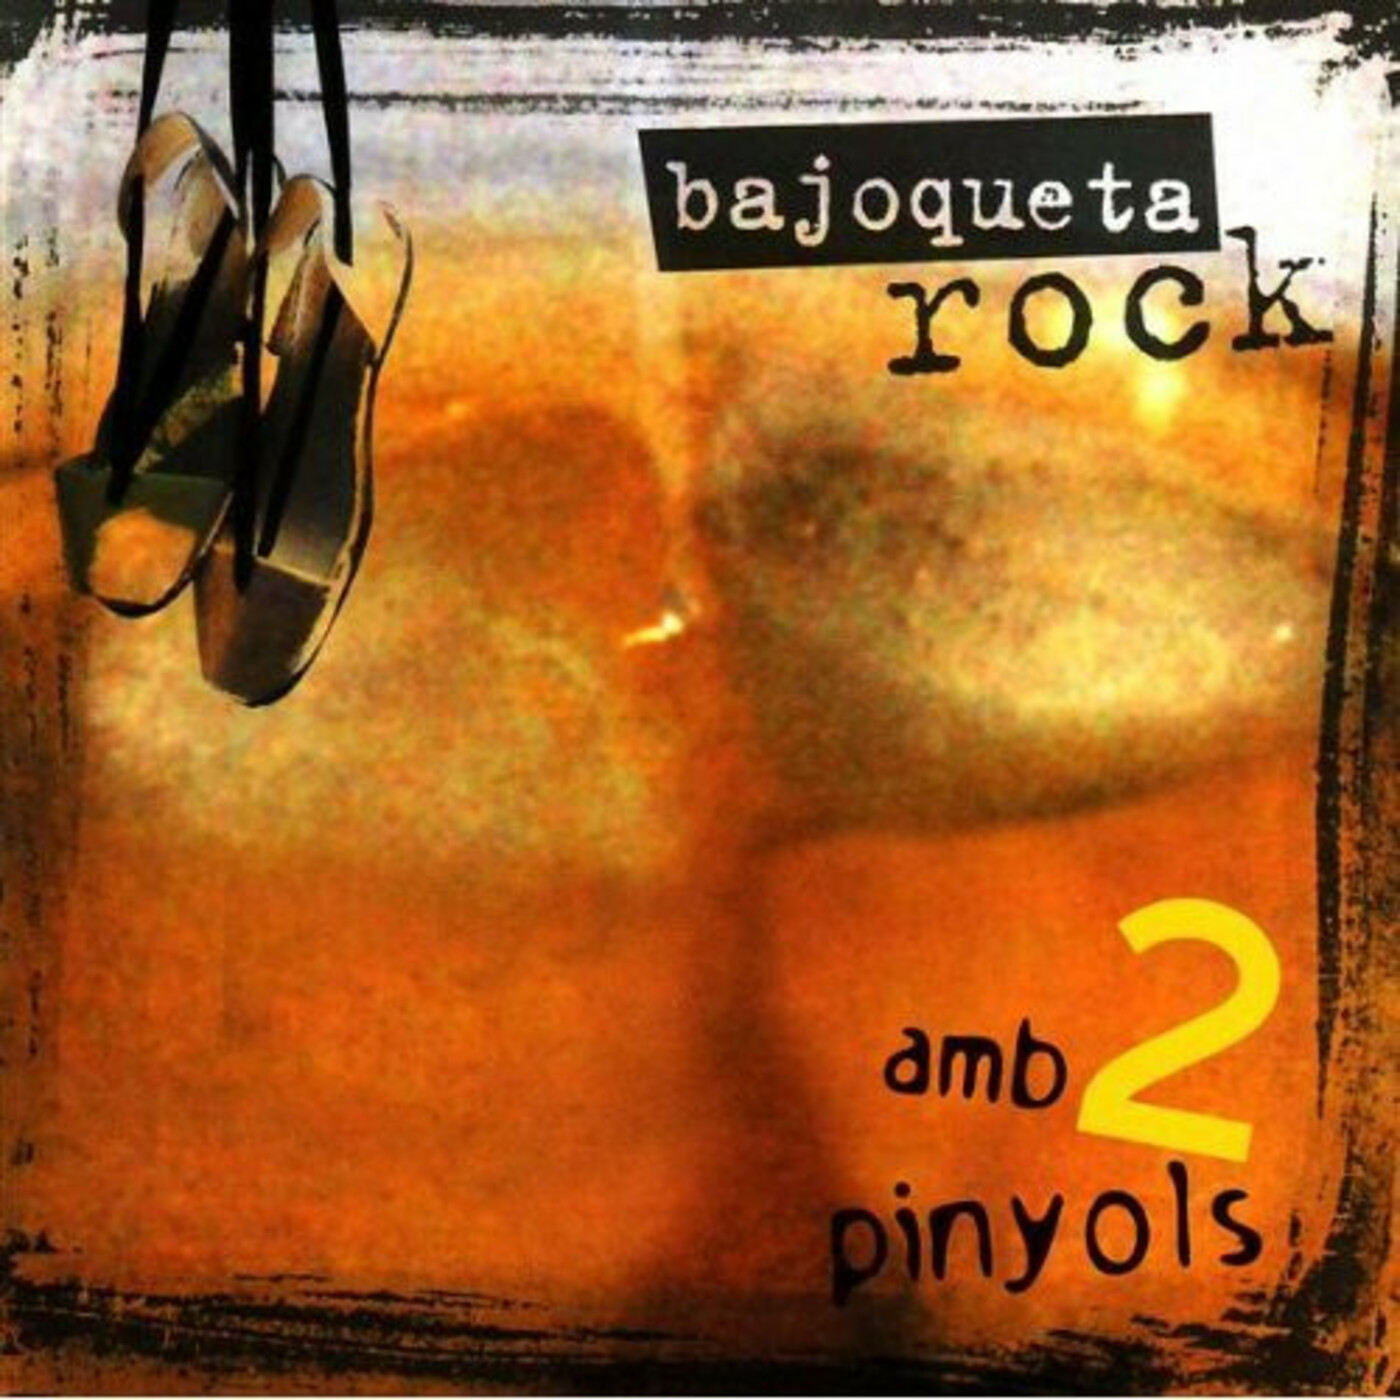 Bajoqueta Rock - Amb 2 pinyols | musica en valencià